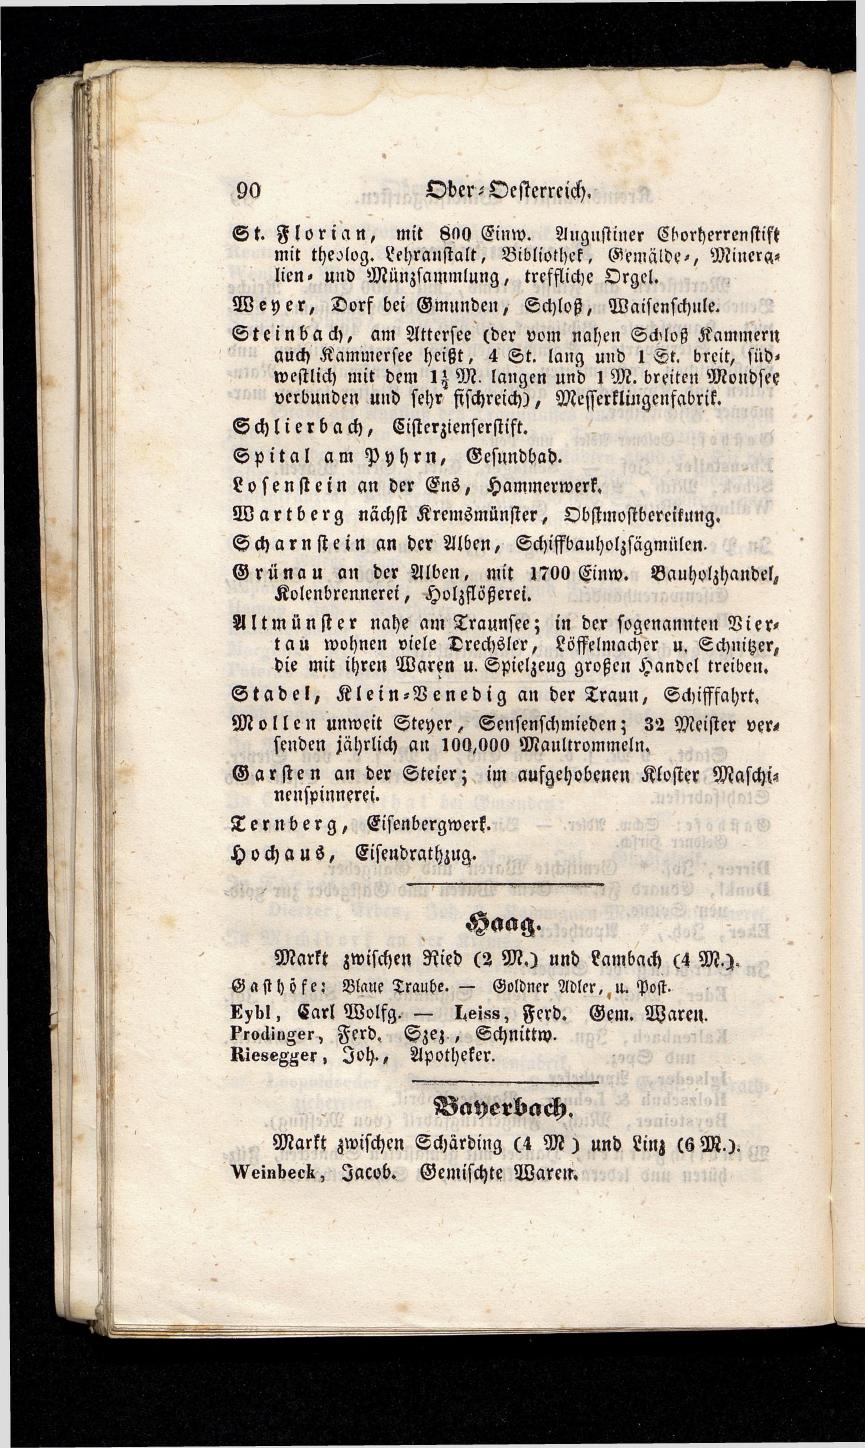 Grosses Adressbuch der Kaufleute. No. 13. Oesterreich ober u. unter der Enns 1844 - Seite 94